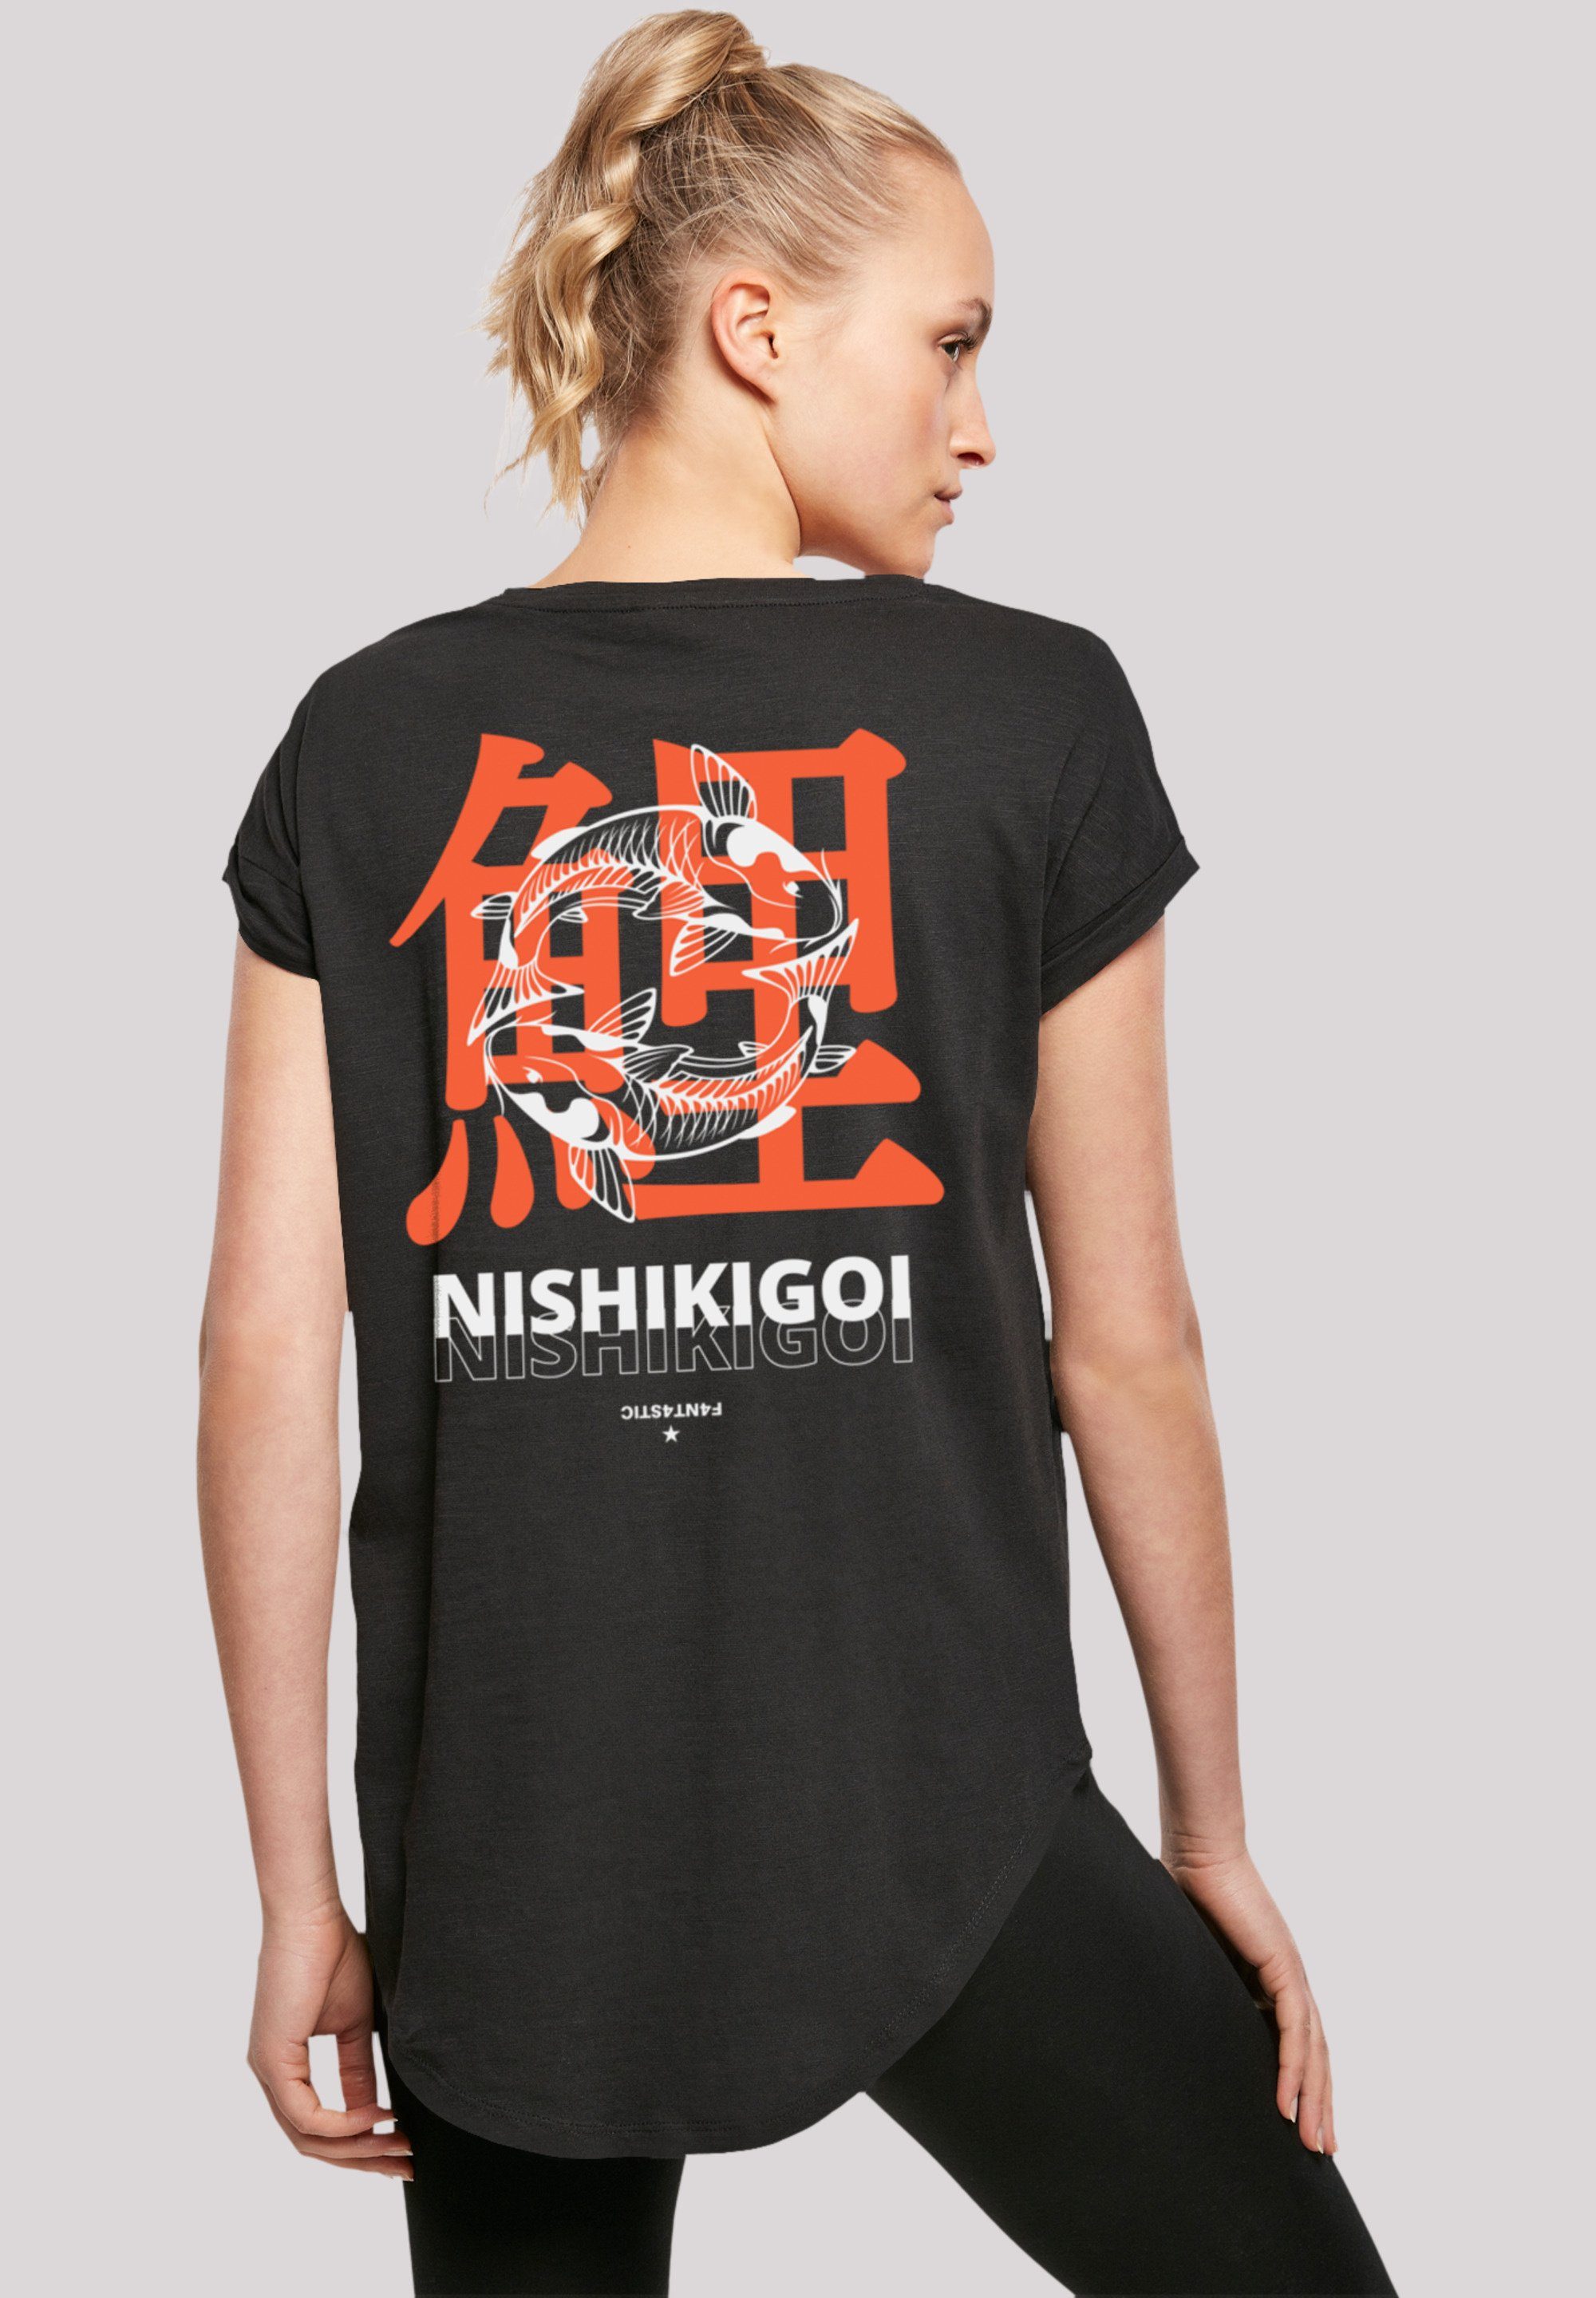 F4NT4STIC T-Shirt Nishikigoi Koi Japan mit hohem Tragekomfort Grafik weicher Sehr Print, Baumwollstoff